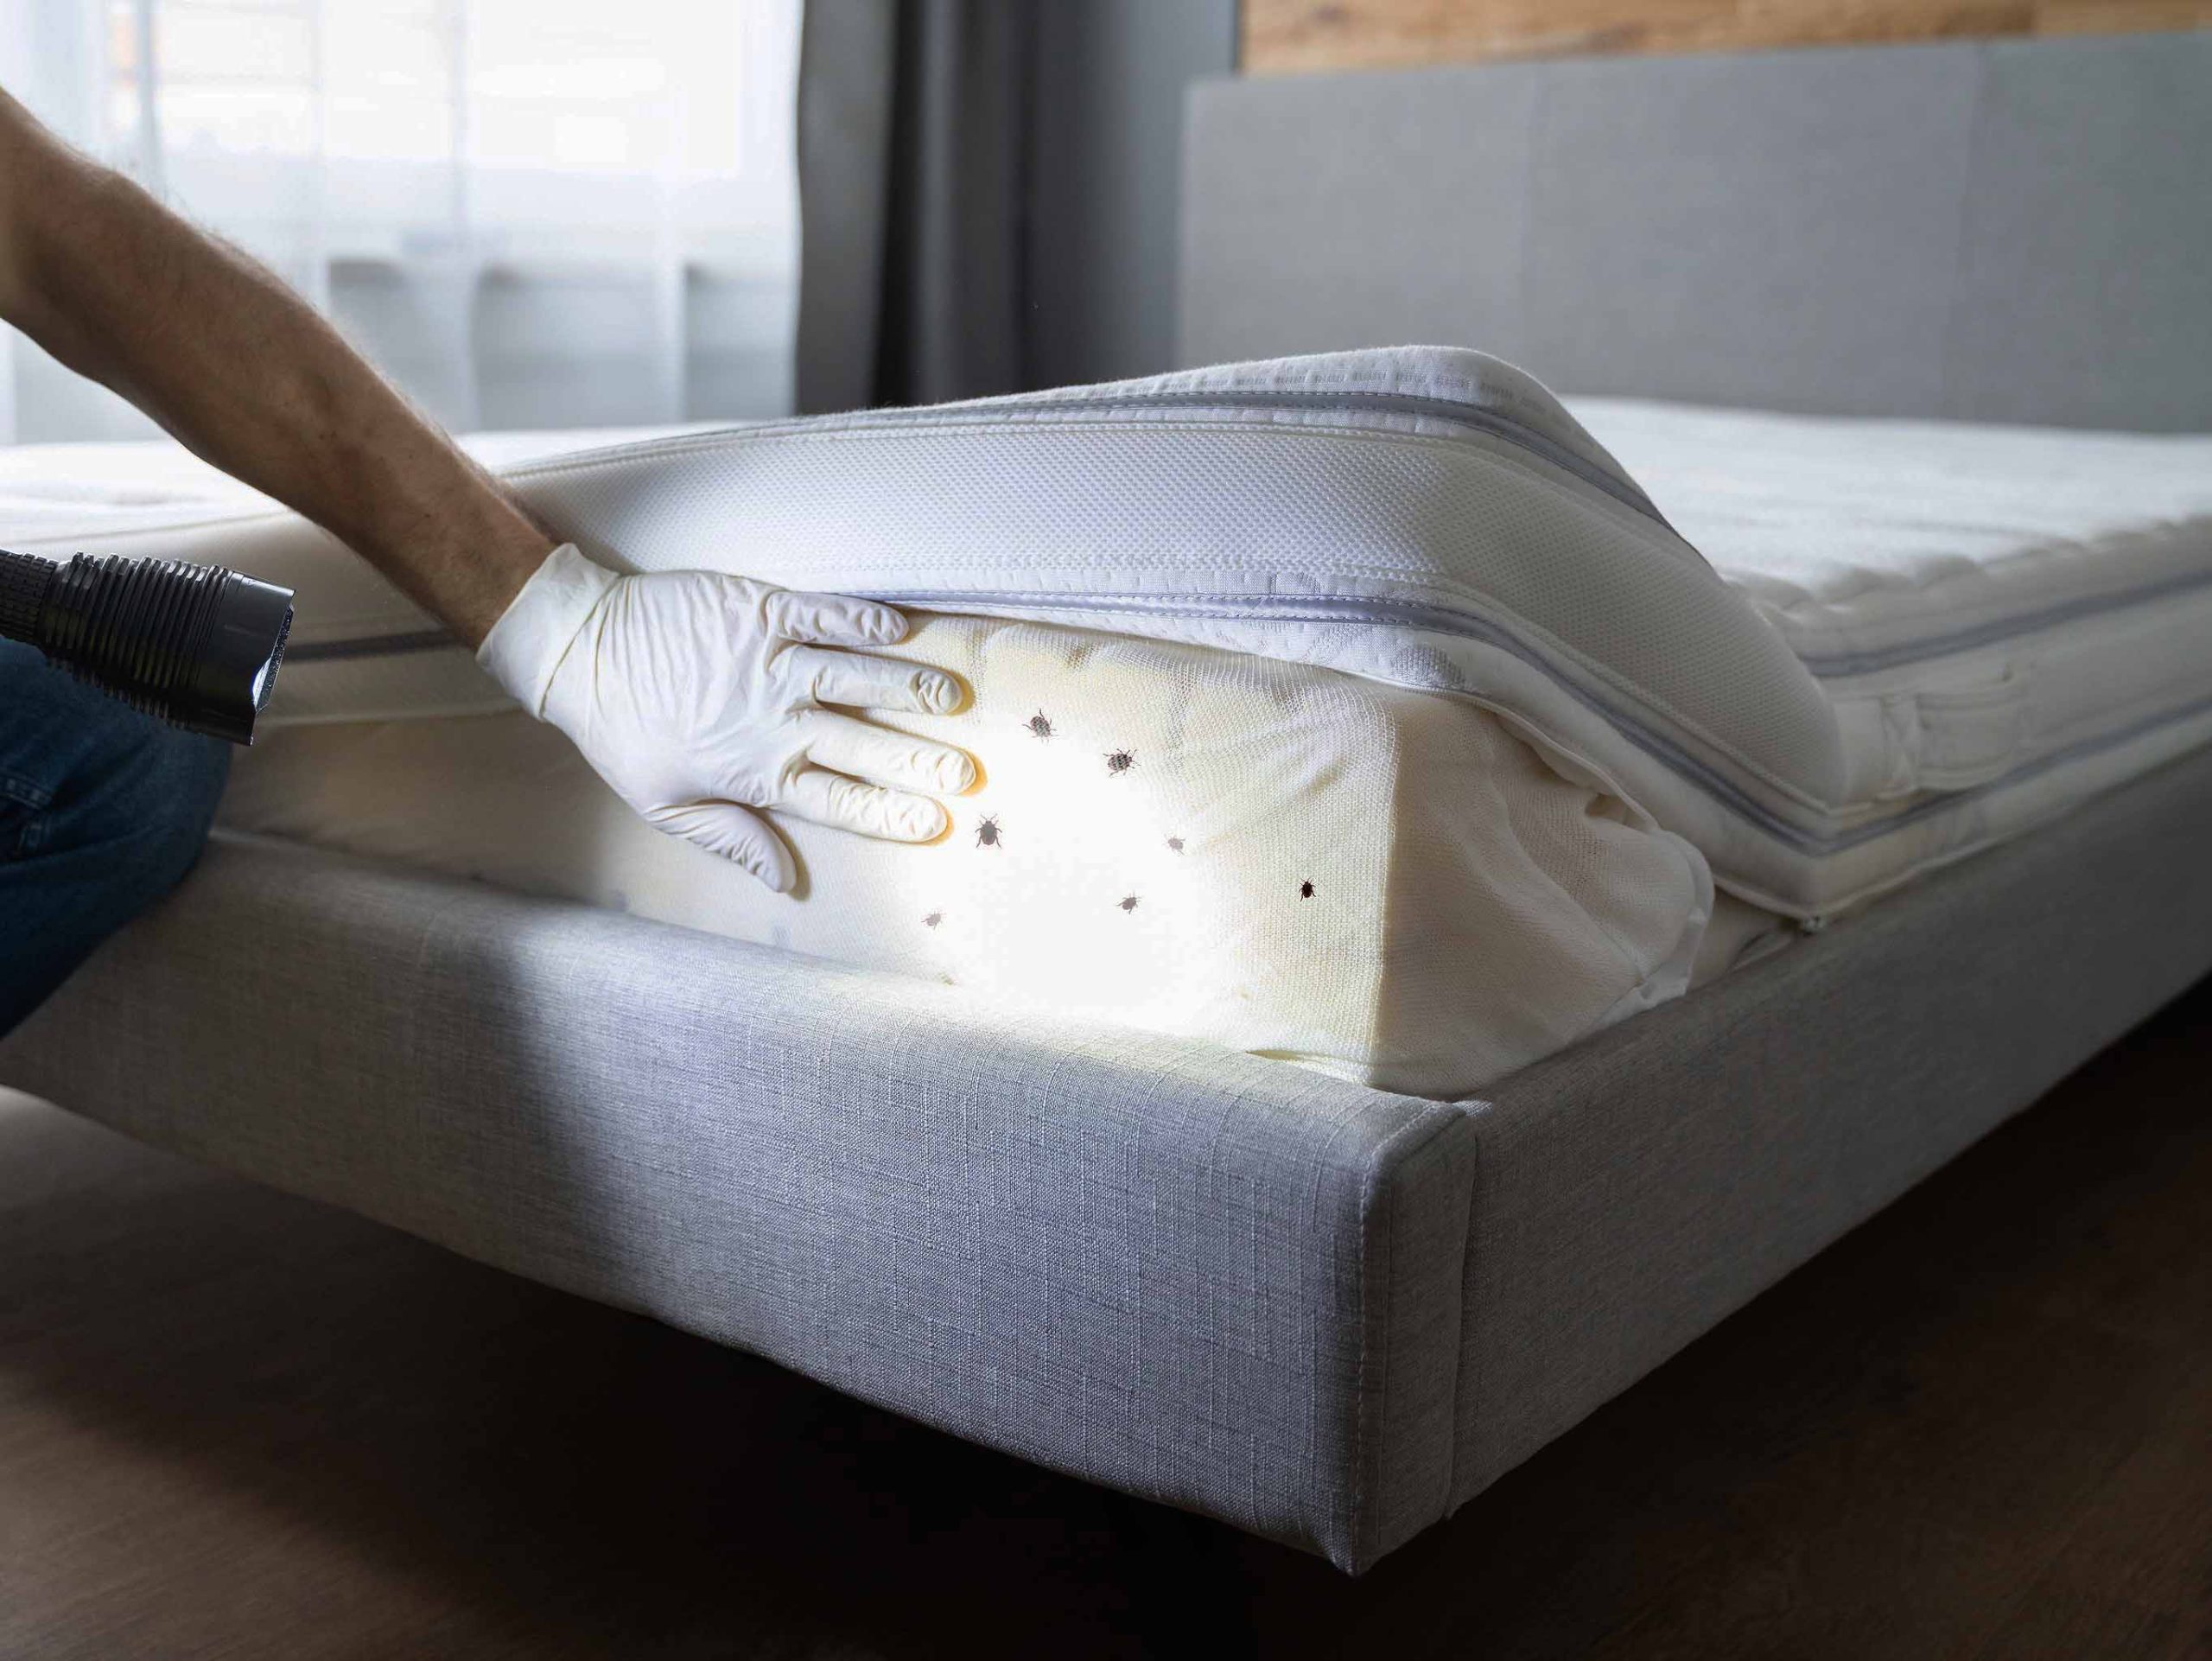 Les punaises de lit se logent dans les matelas, les fissures et leurs piqûres peuvent provoquer des démangeaisons